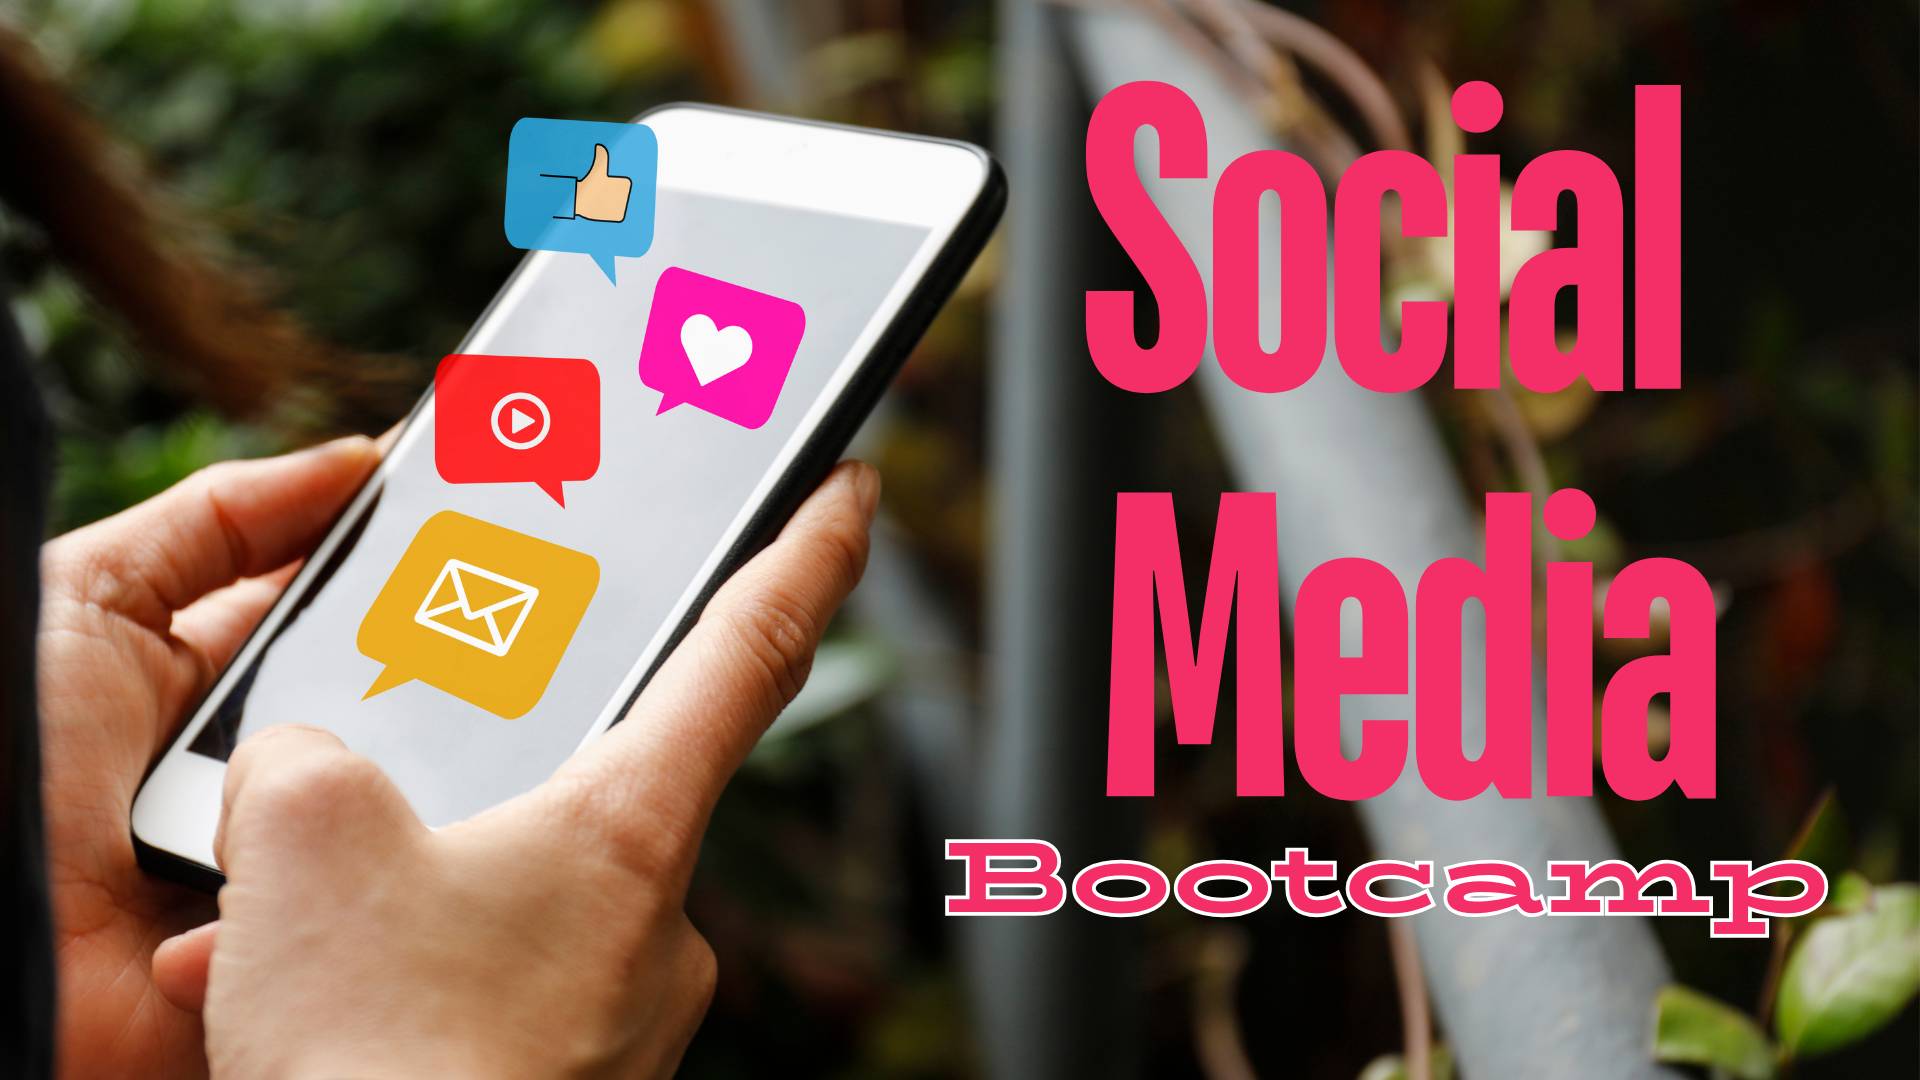 SOCIAL MEDIA BOOTCAMP Week 8/26-8/30